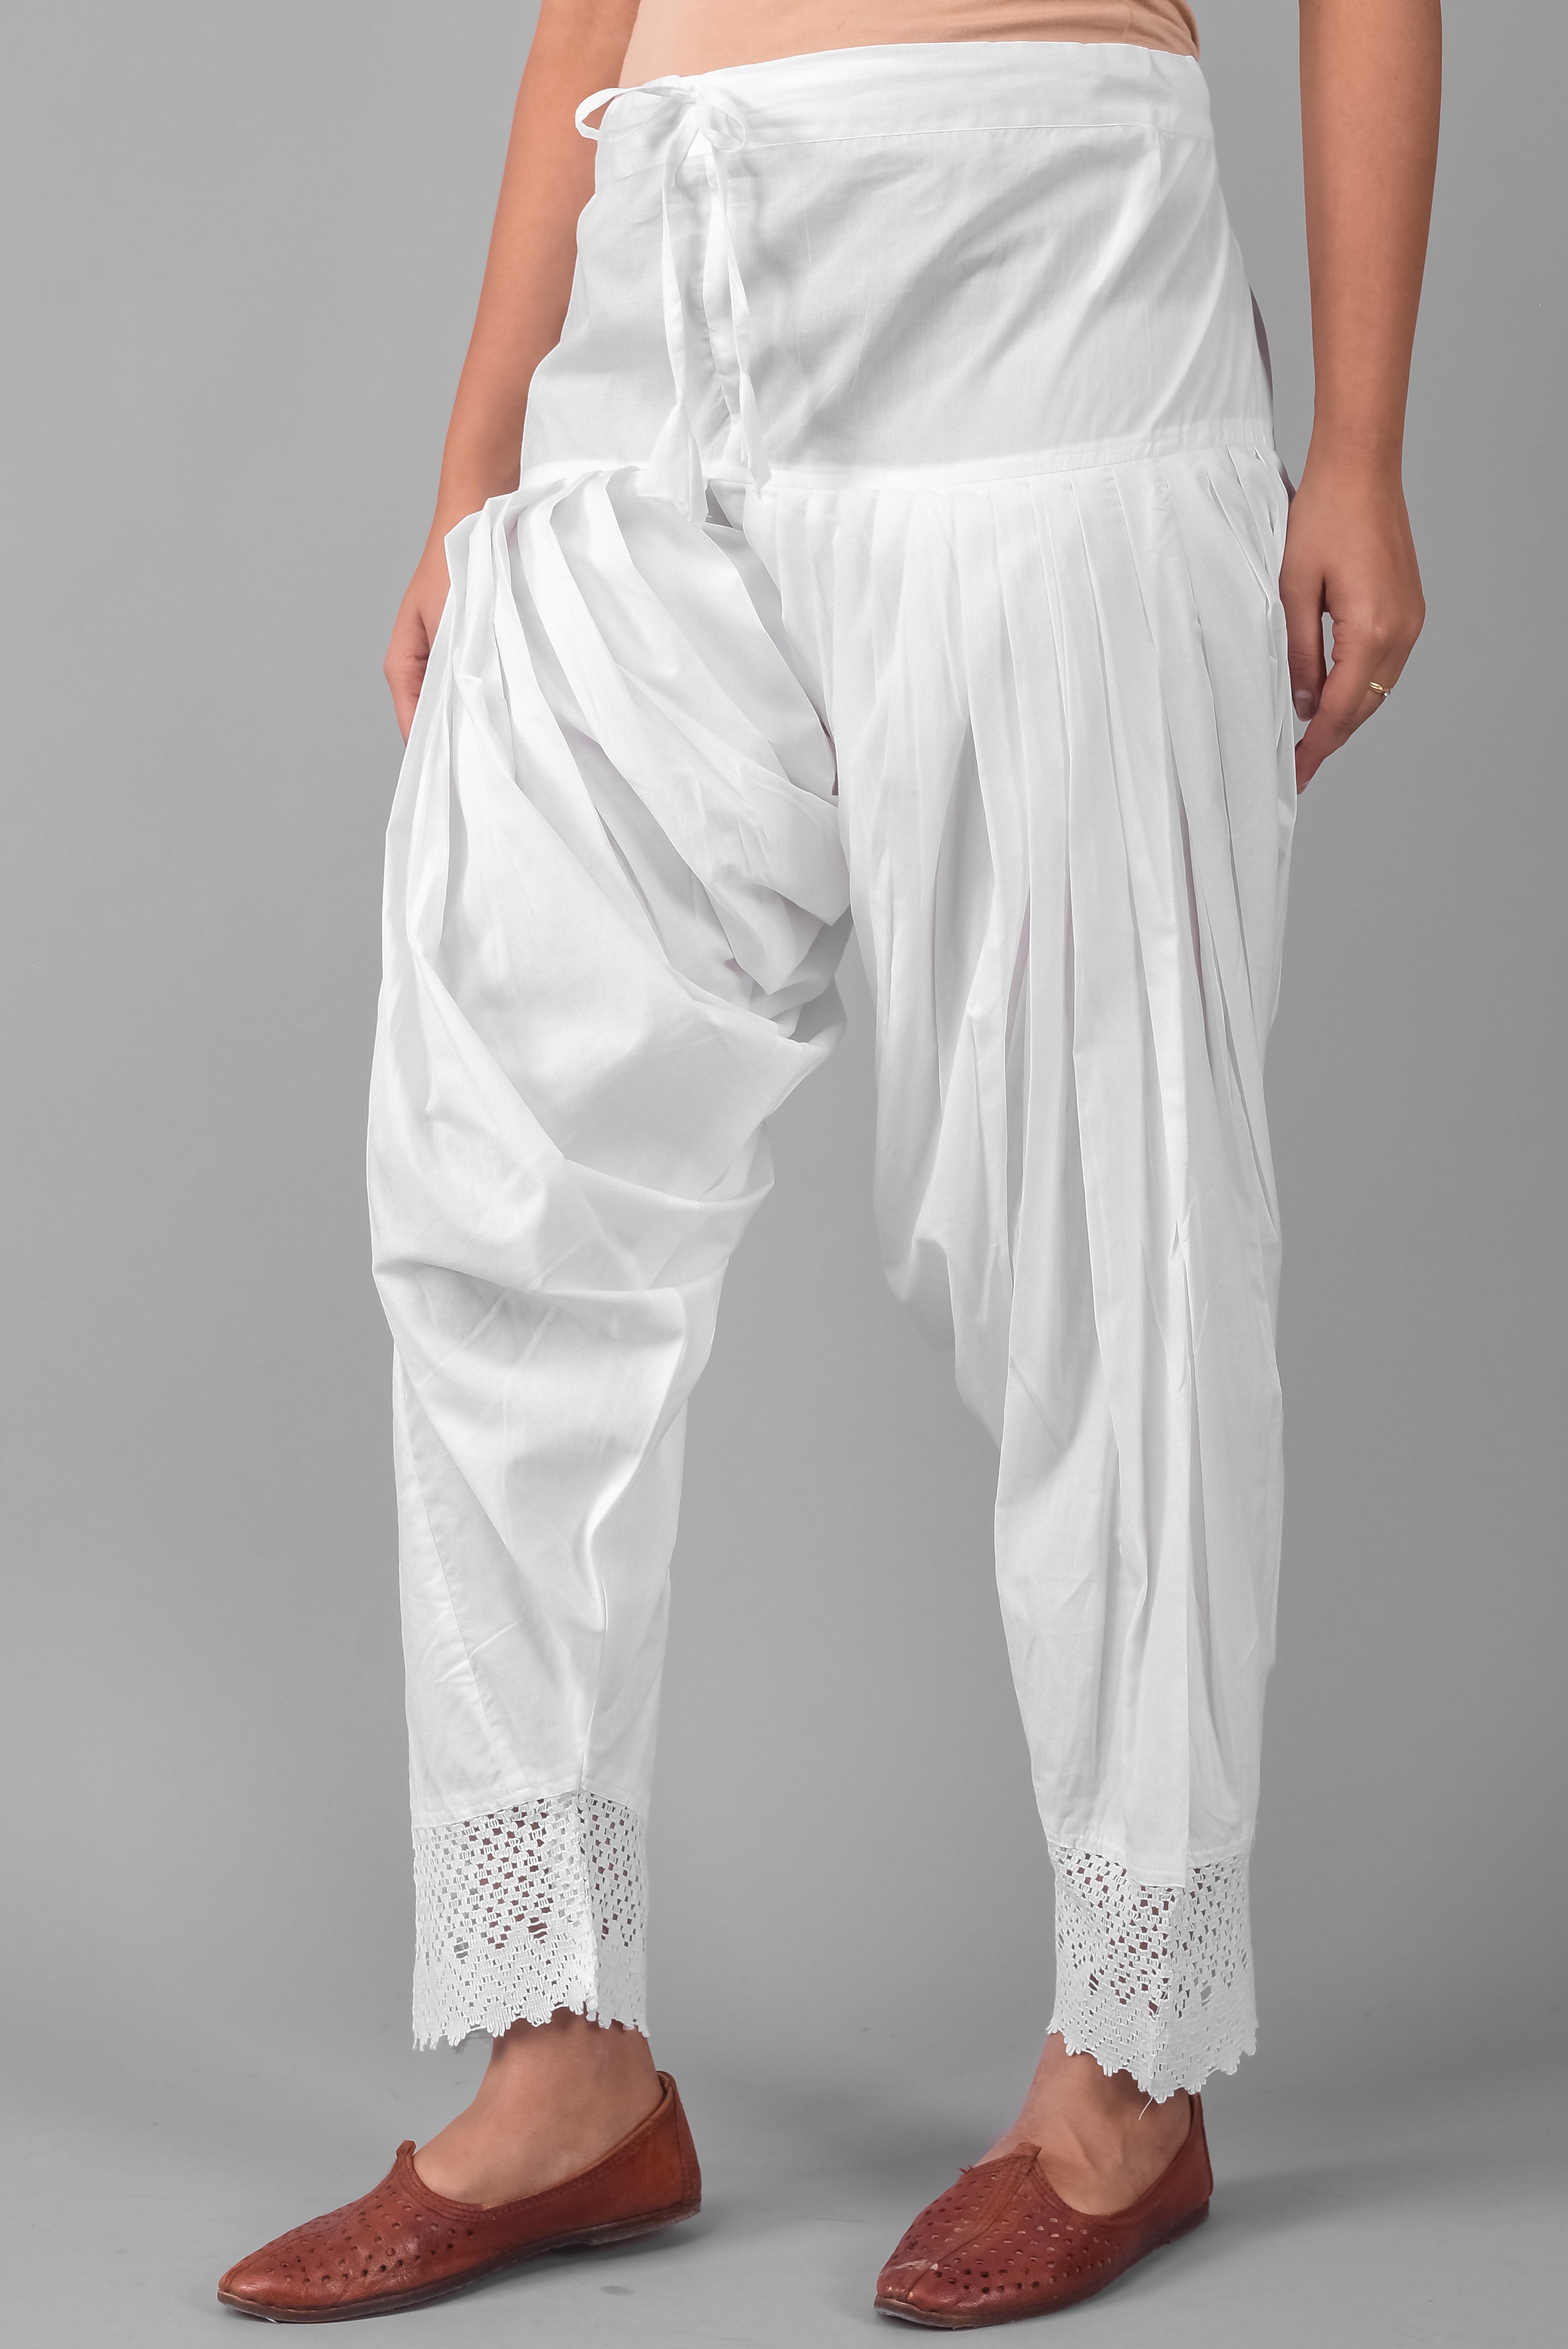 Royal Kurta Mens Cotton Blend White Patiala Salwar Pants (Free Size, Sky  Blue) - Walmart.com